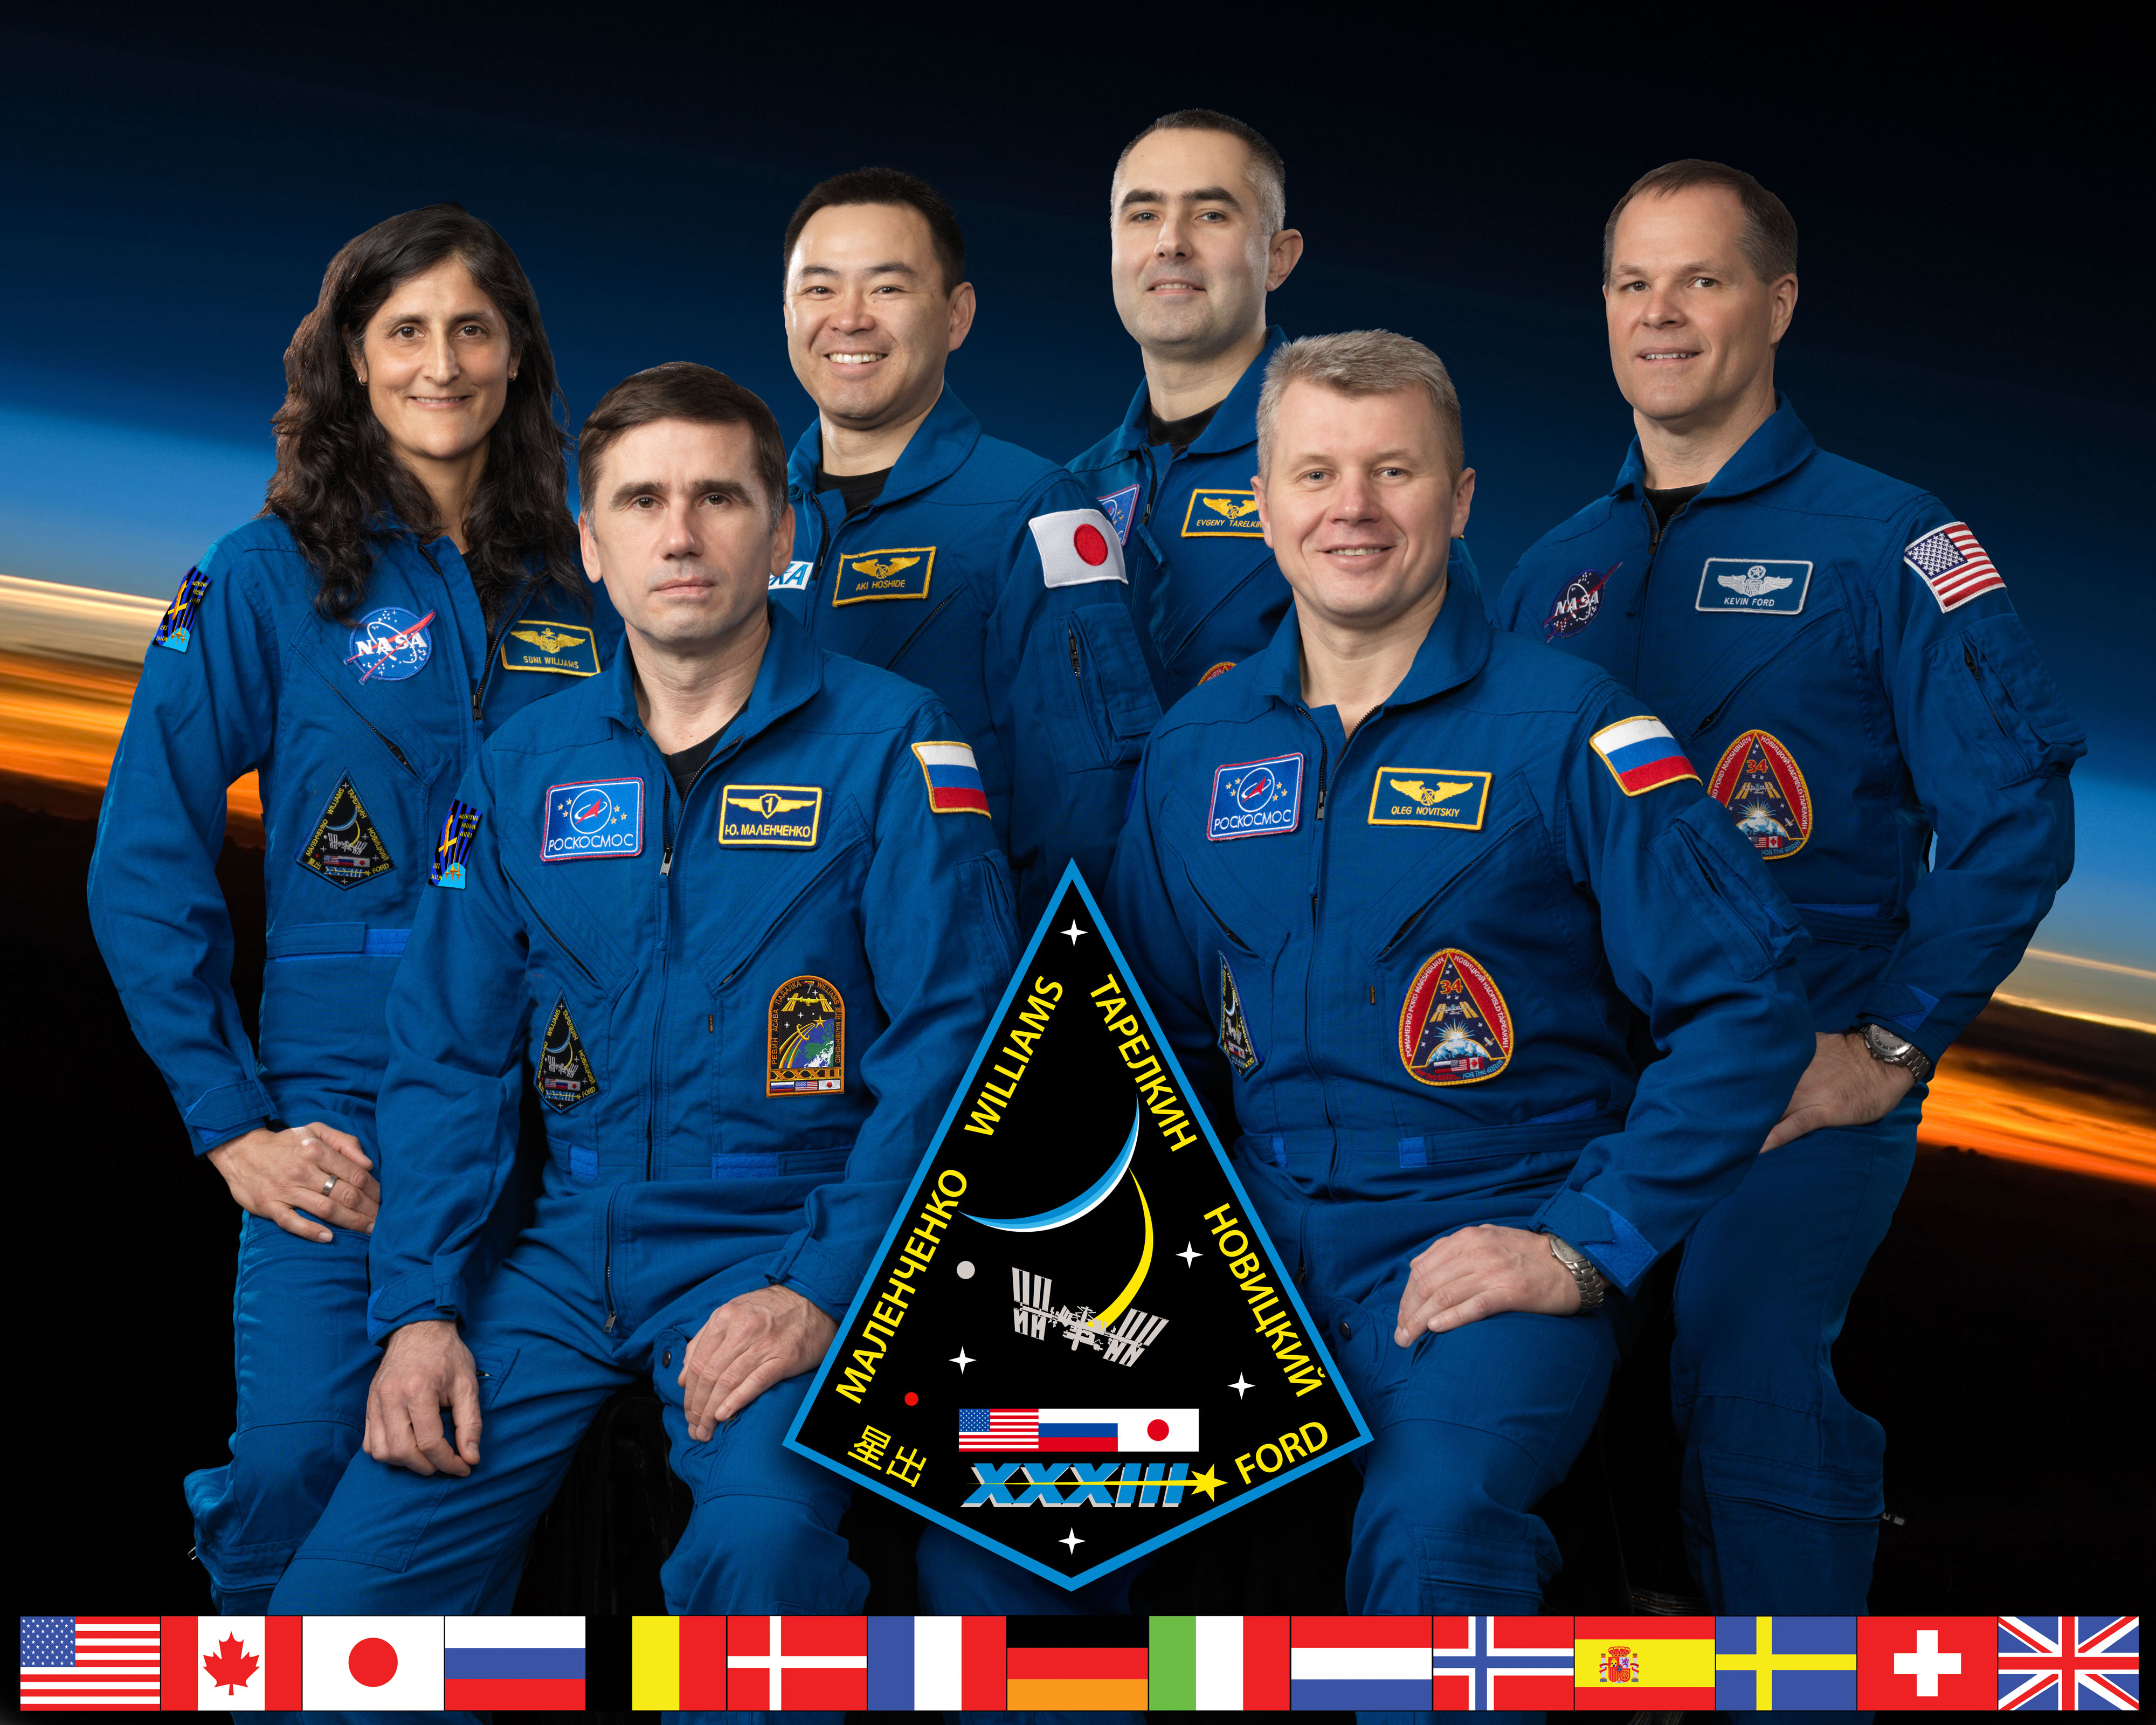 Expedition 33 crew portrait